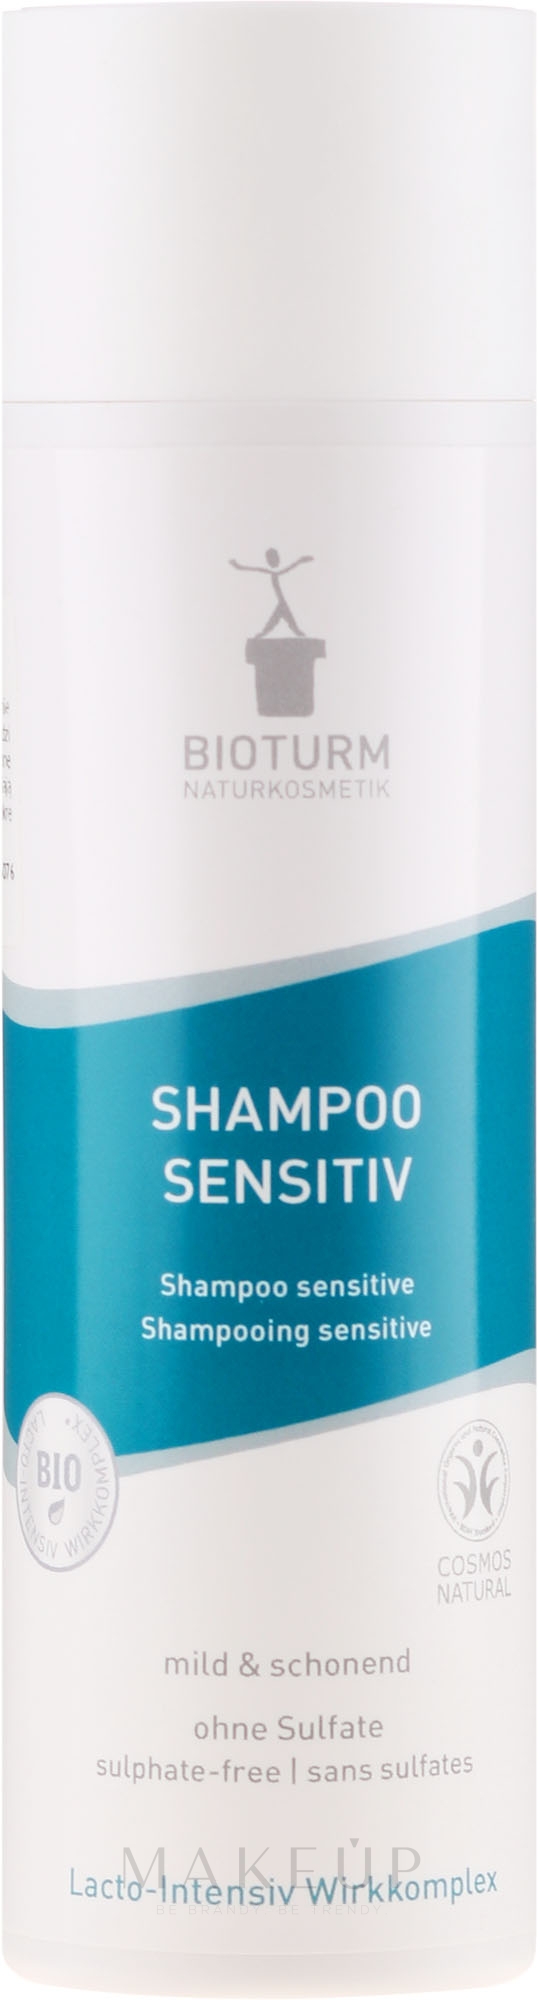 Mildes und schonendes Shampoo für empfindliche Kopfhaut - Bioturm Shampoo Sensitiv Nr. 23 — Bild 200 ml